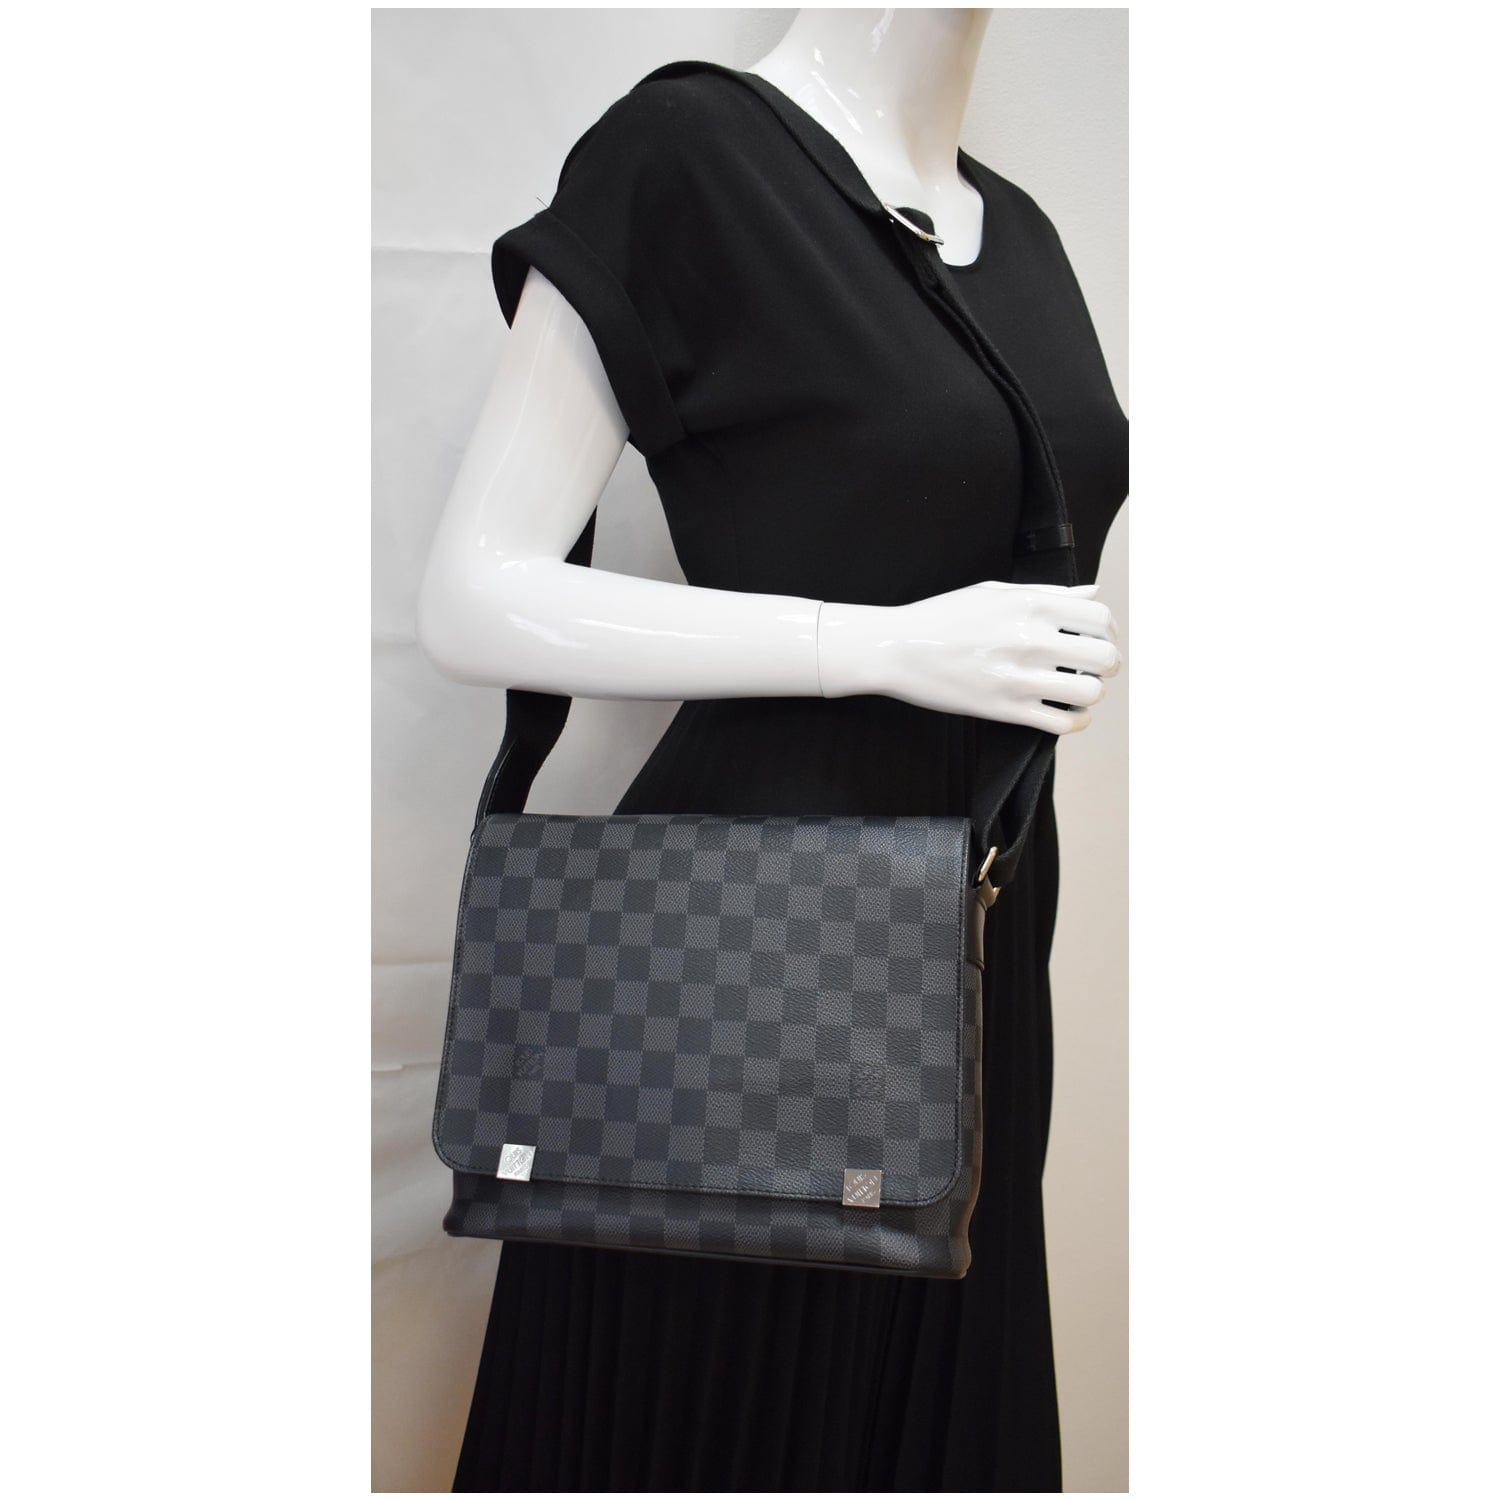 Louis Vuitton District PM Messenger Bag Damier Graphite Black for